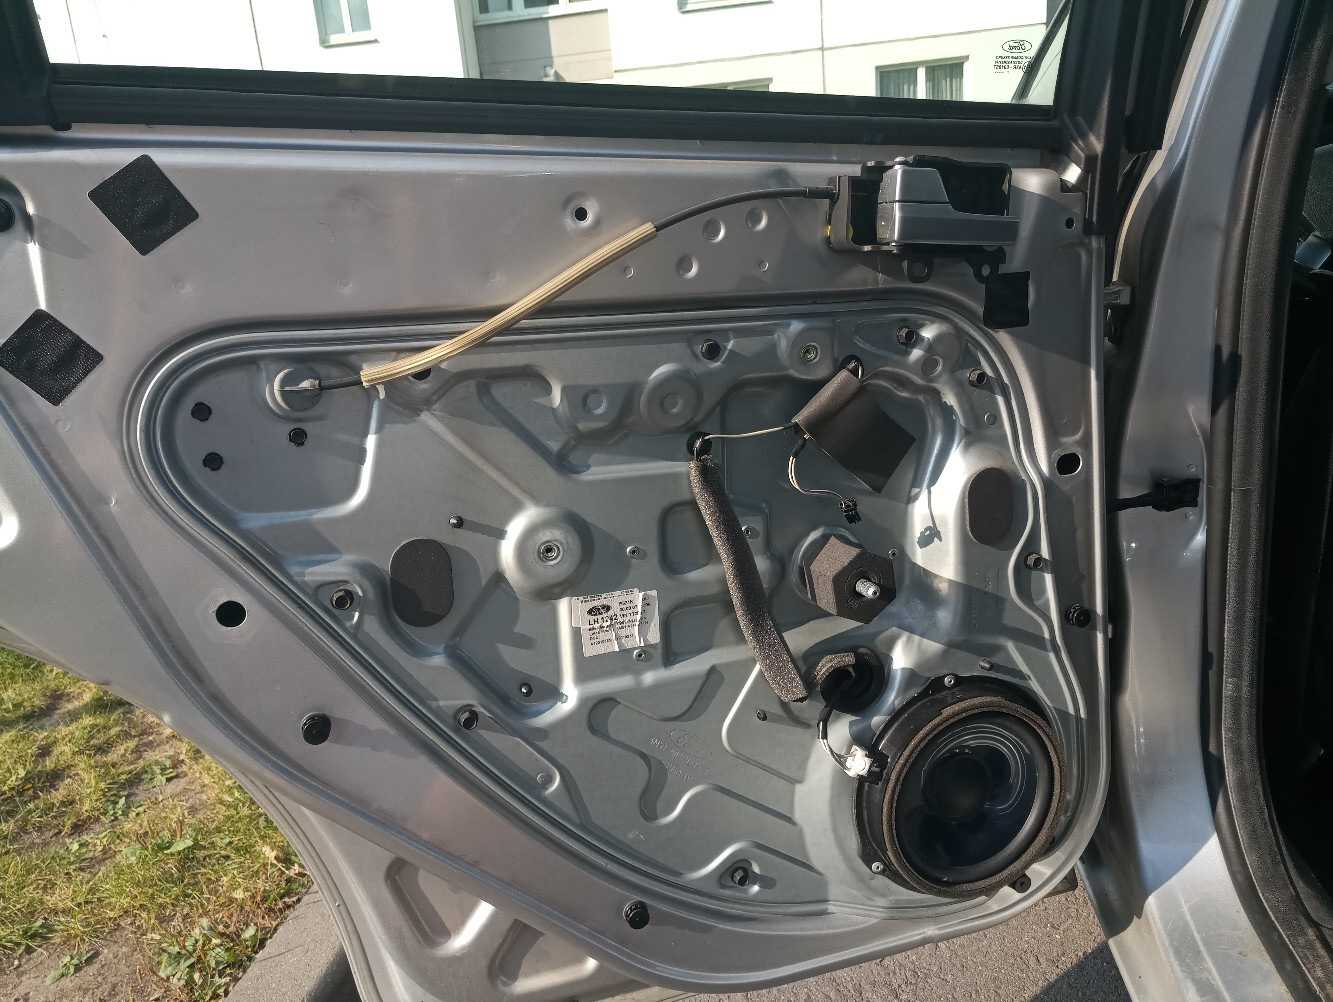 Замок двери форд фокус 2 — снятие и ремонт передней водительской, задней дверцы